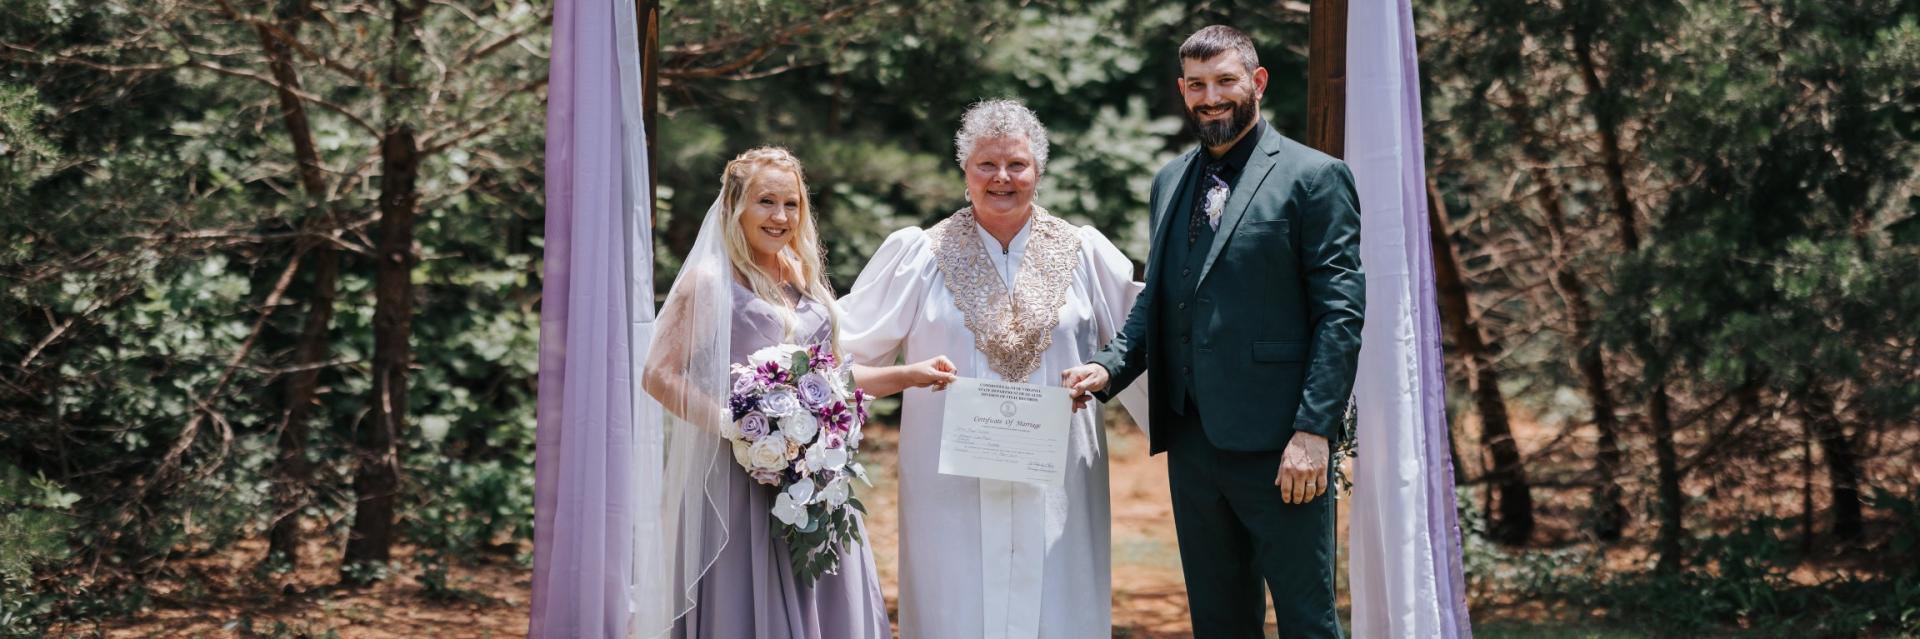 outdoor elopement in Virginia with wedding officiant